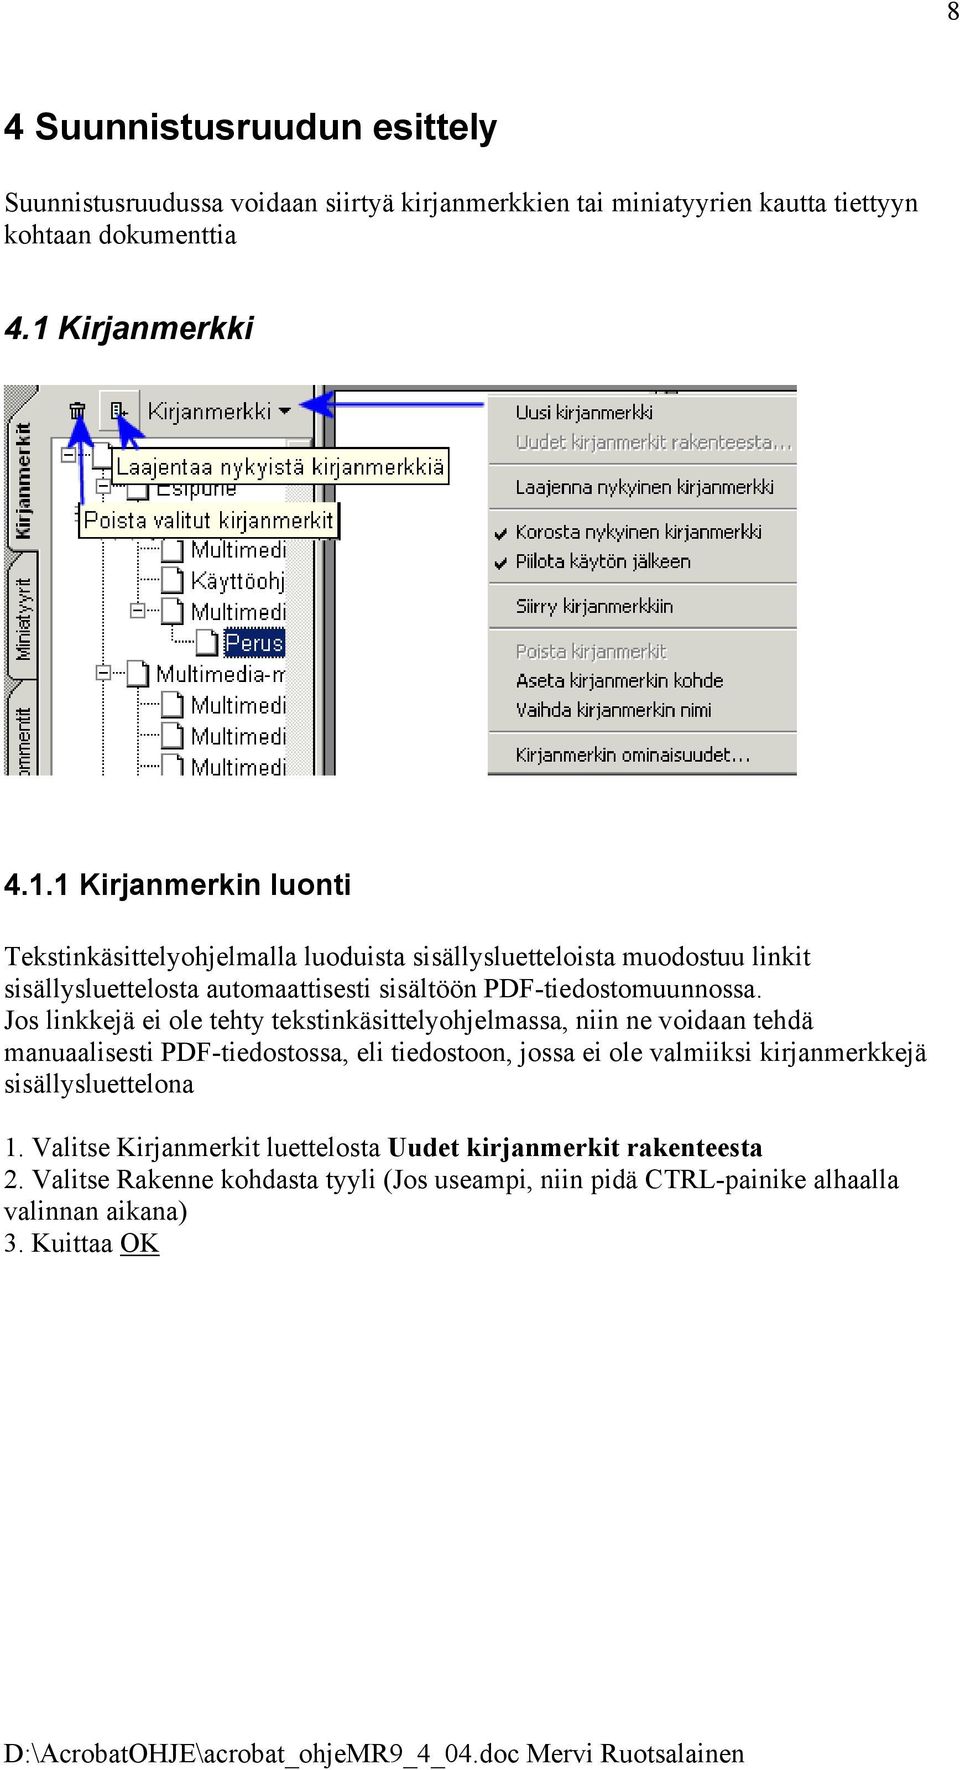 1 Kirjanmerkin luonti Tekstinkäsittelyohjelmalla luoduista sisällysluetteloista muodostuu linkit sisällysluettelosta automaattisesti sisältöön PDF-tiedostomuunnossa.